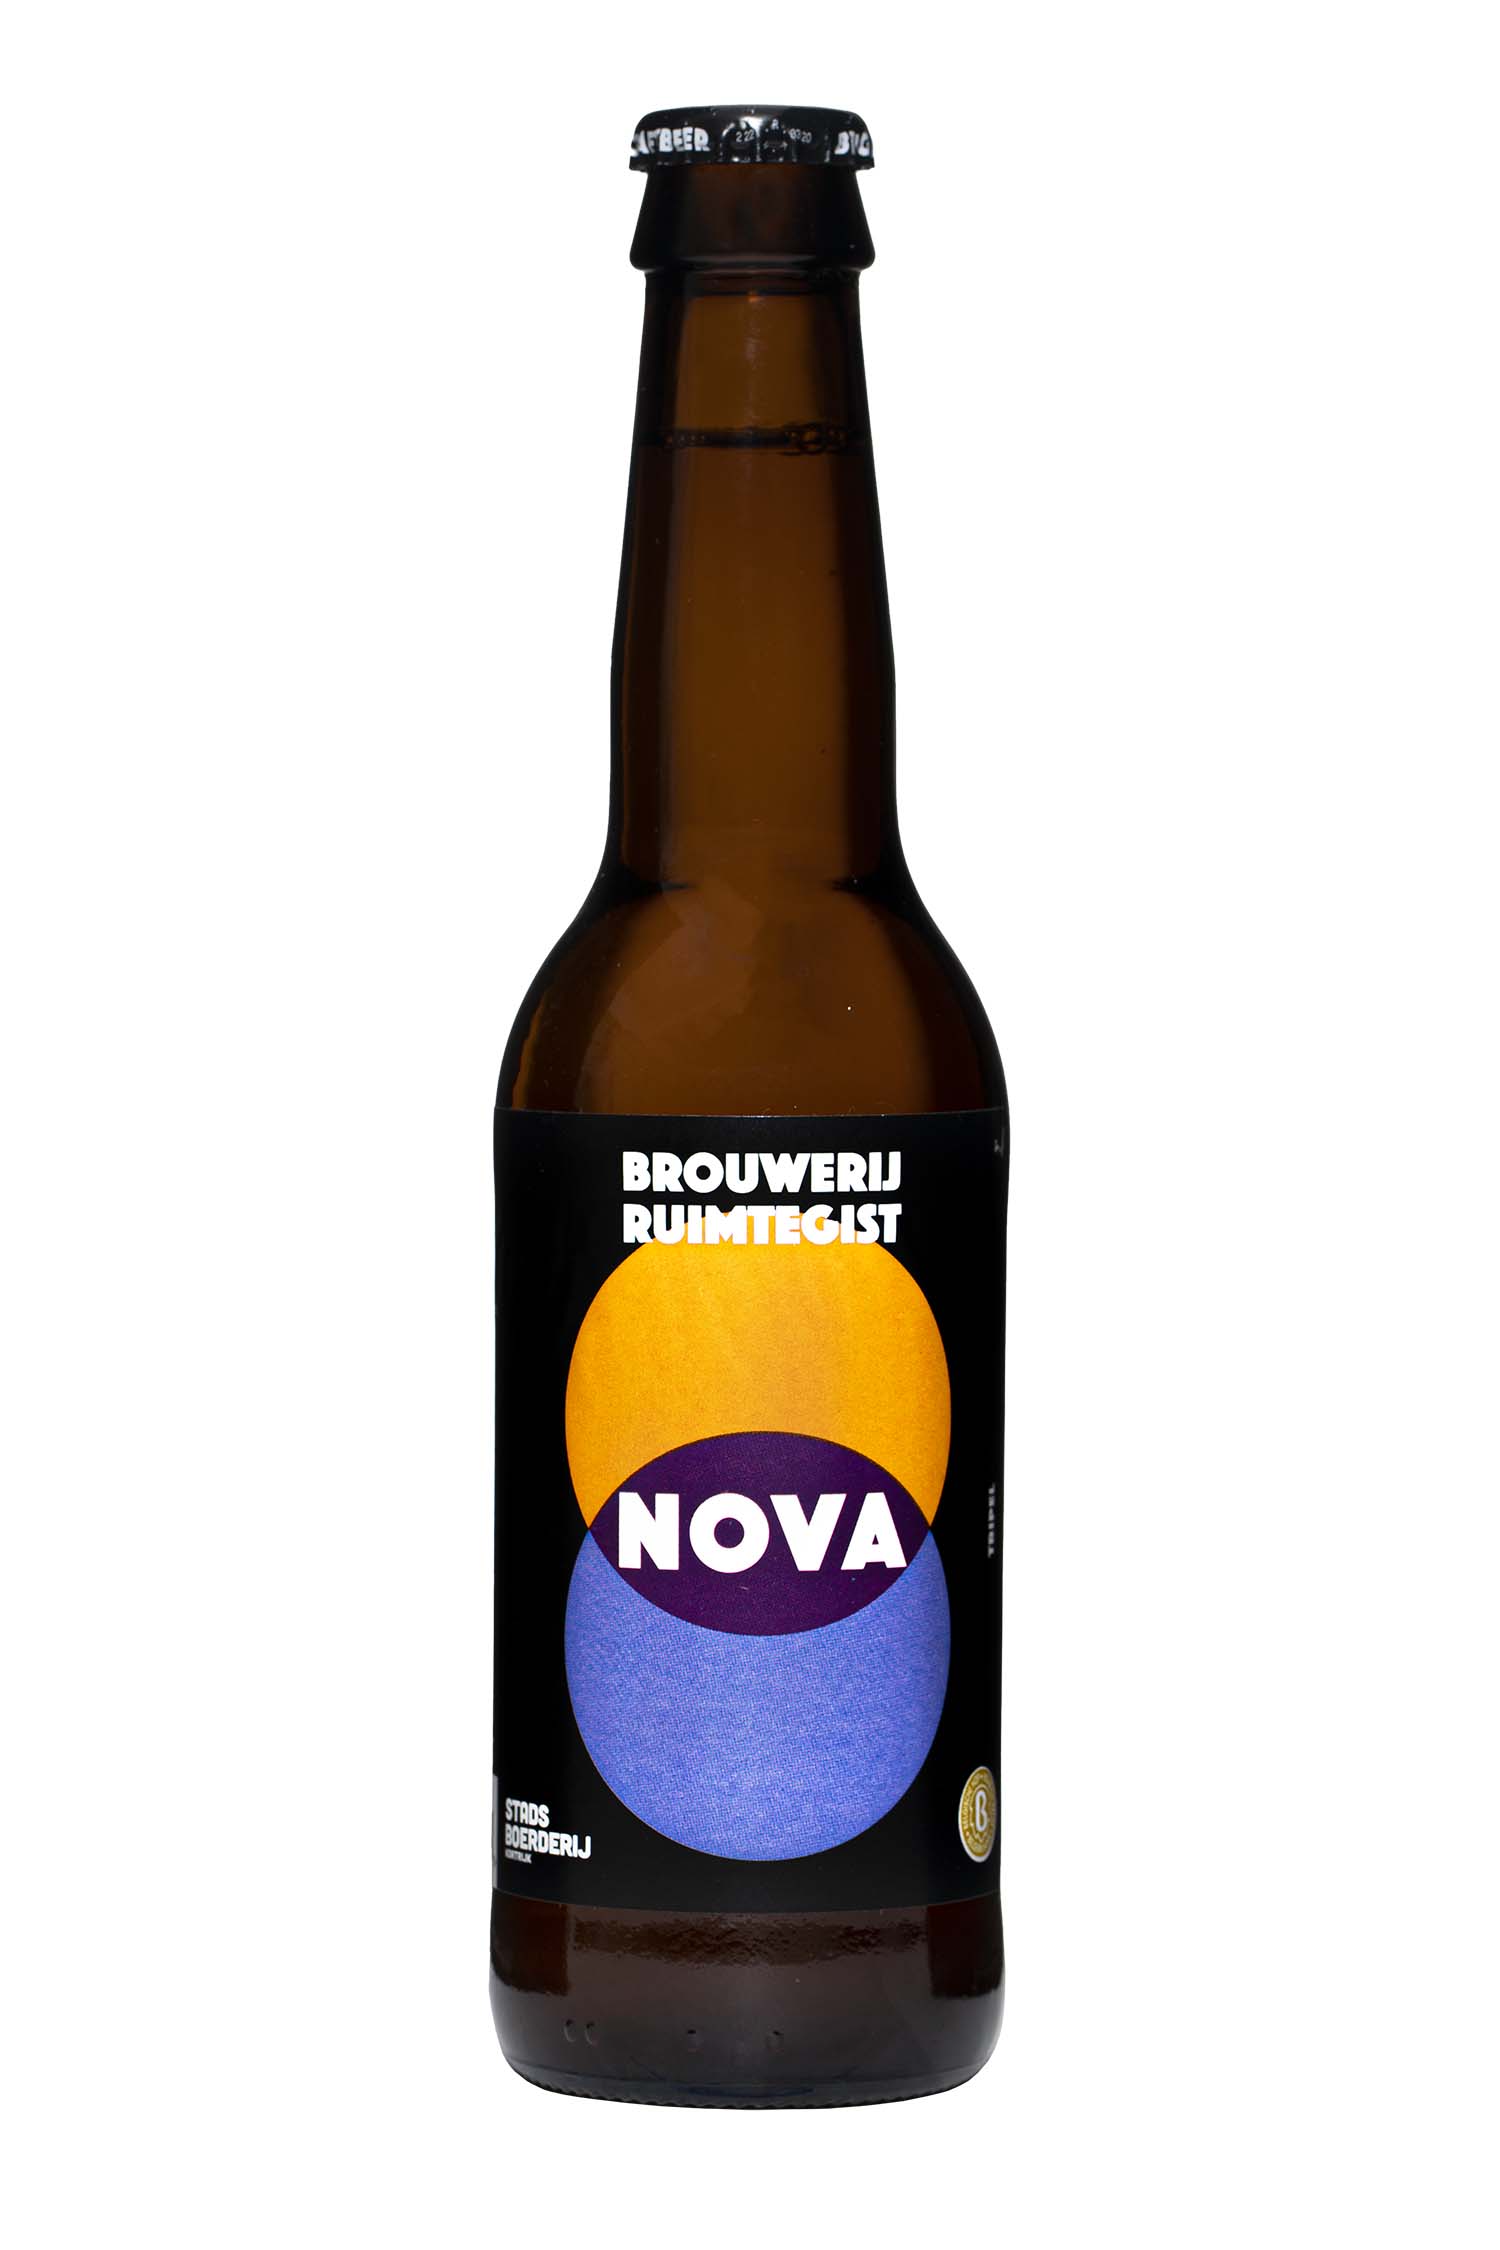 Nova - Brouwerij Ruimtegist 